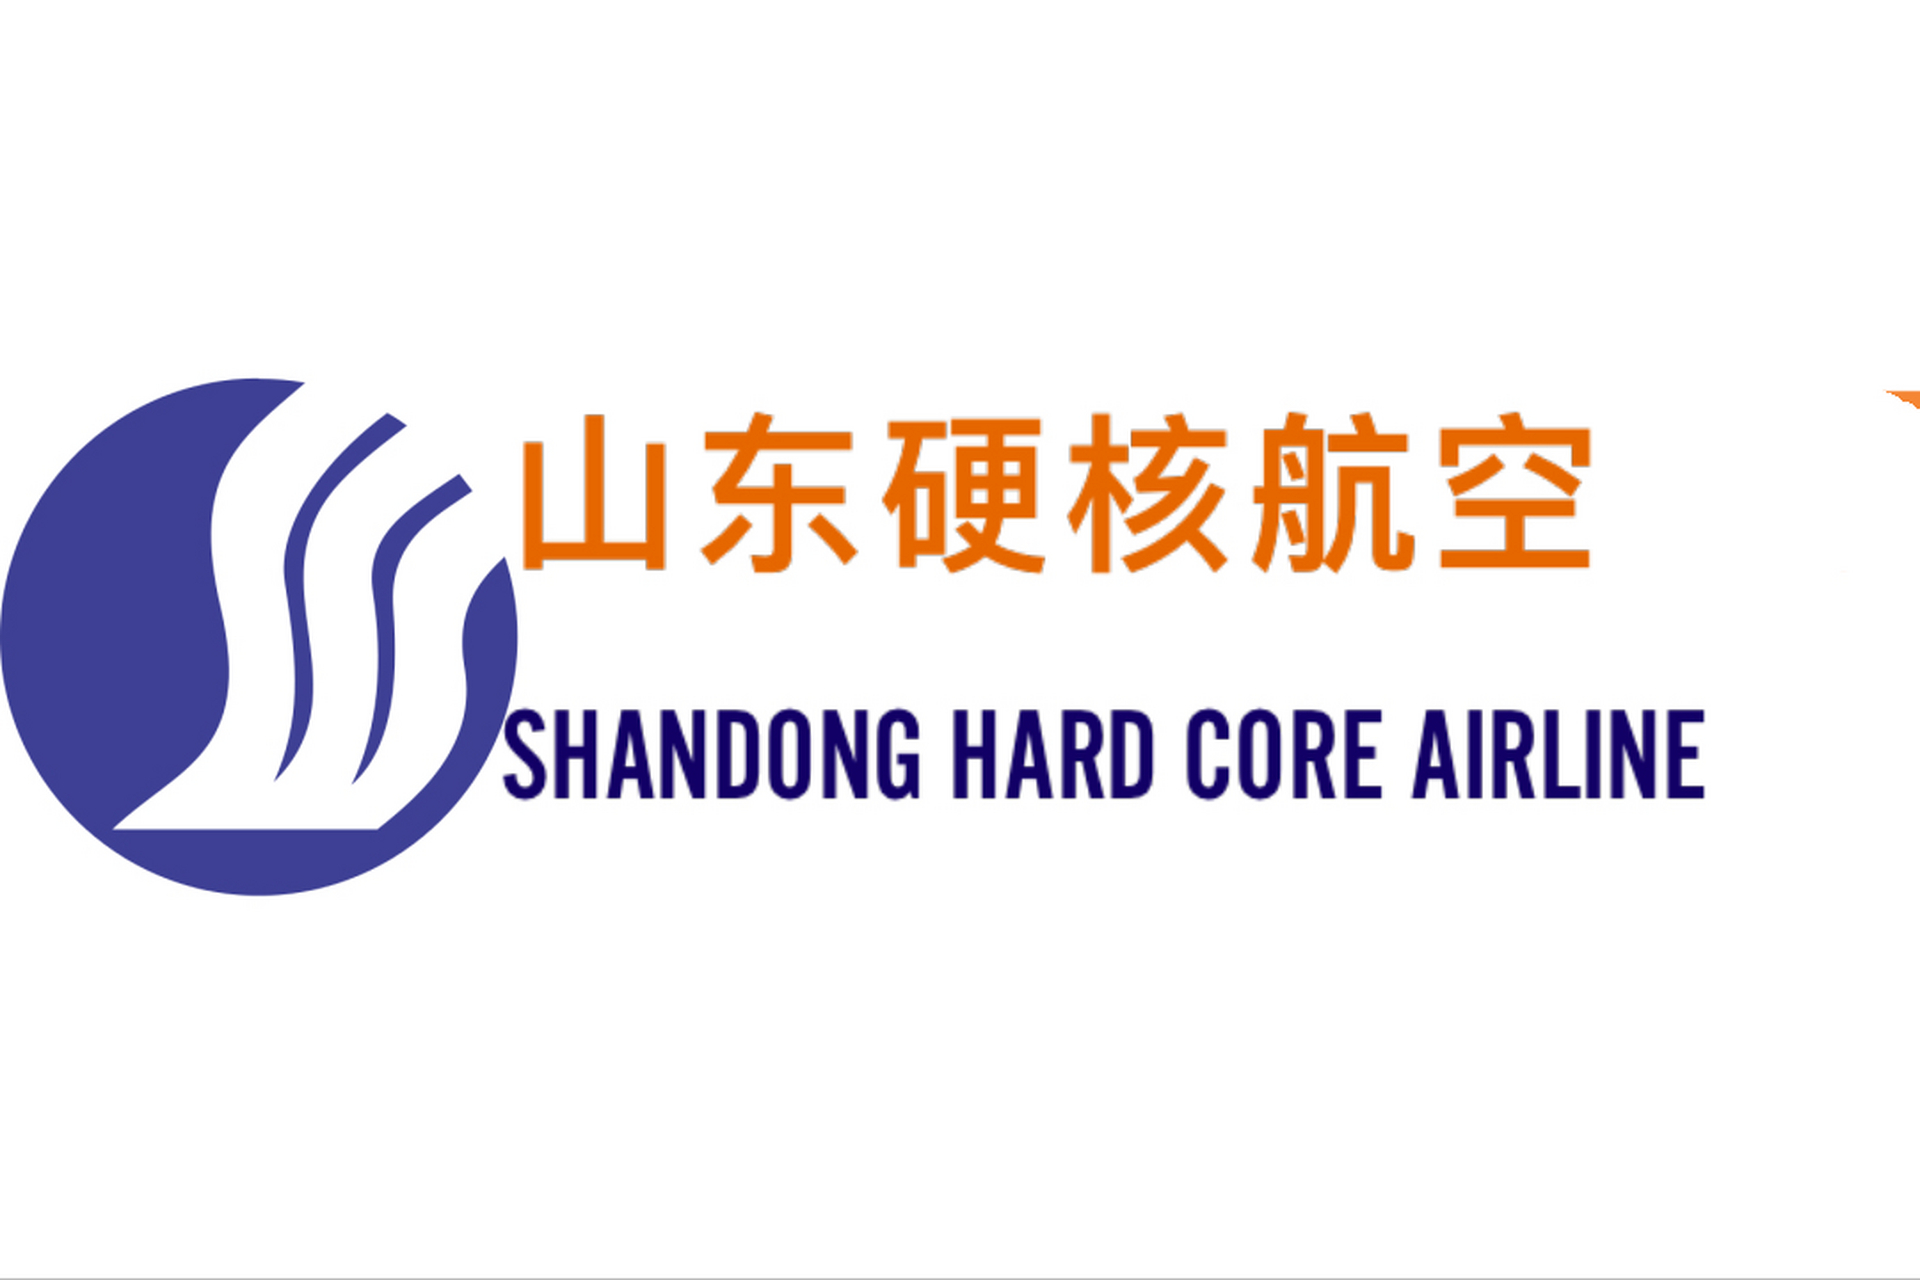 中国山东航空标志图片